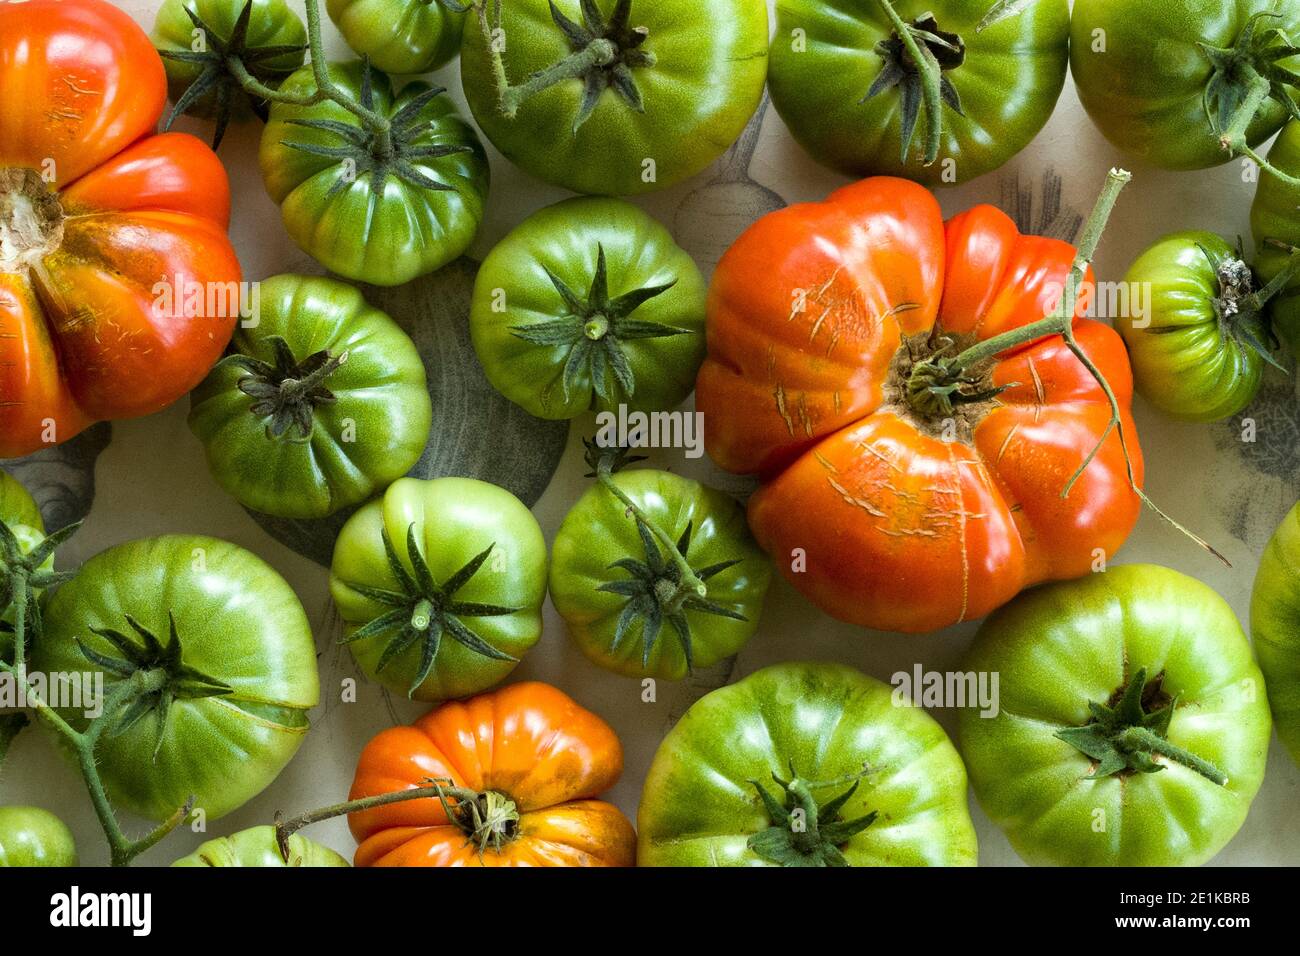 Colores llamativos rojos y verdes de los tomates británicos cultivados en casa recién arrancado de una vid y colocado en una china Plato sobre una mesa rústica en Inglaterra Foto de stock